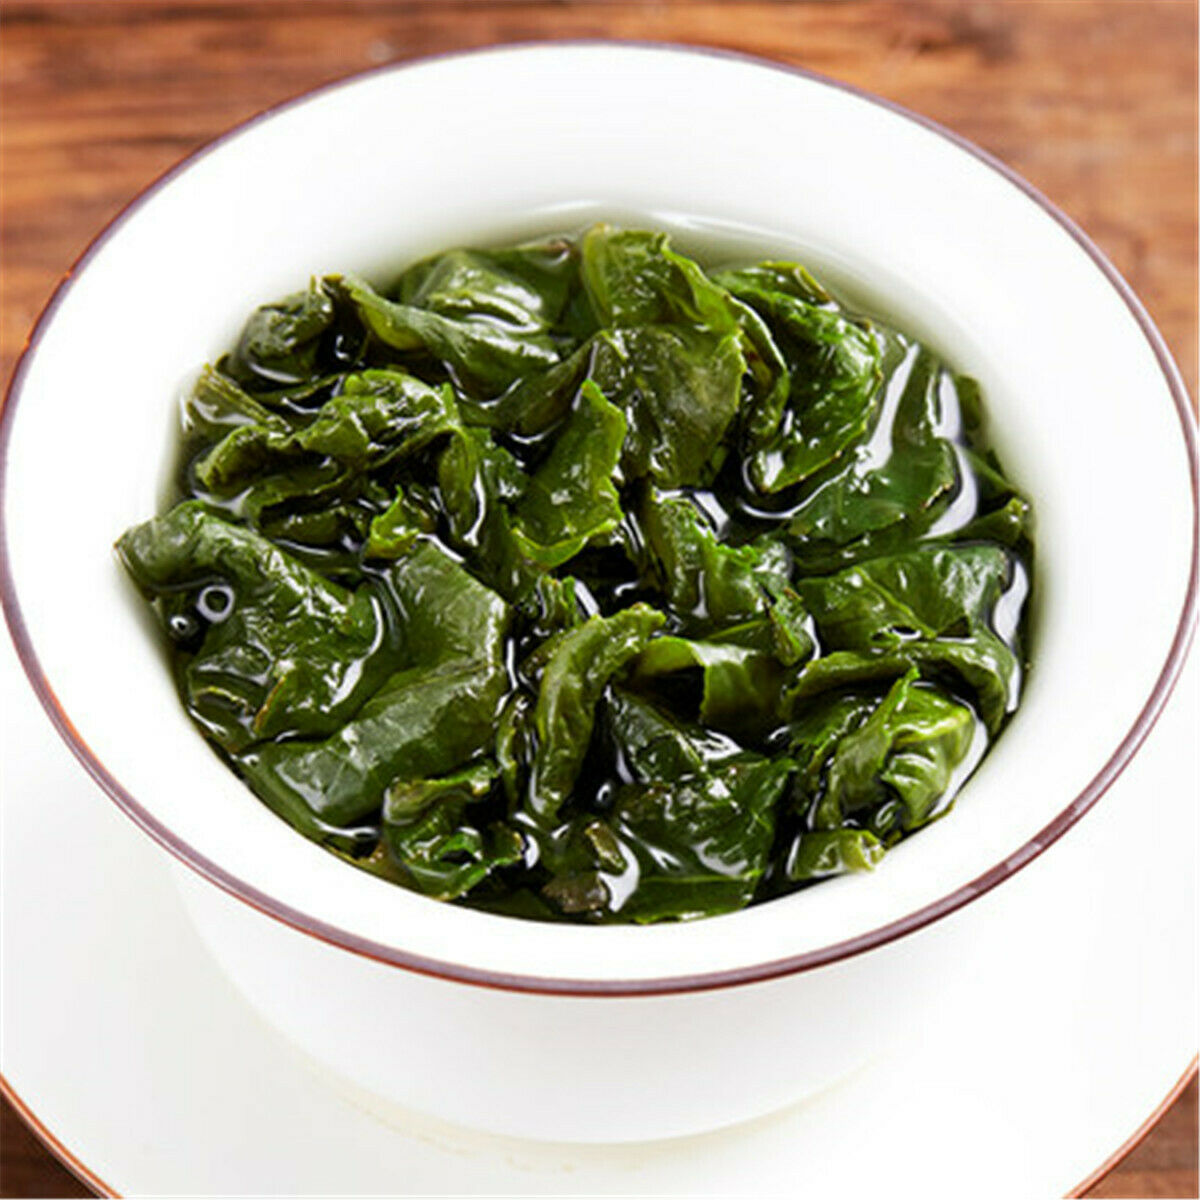 HelloYoung Tie Guan Yin Tea Oolong Tea Fujian An Xi TieGuanYin Oolong Tea Green Tea